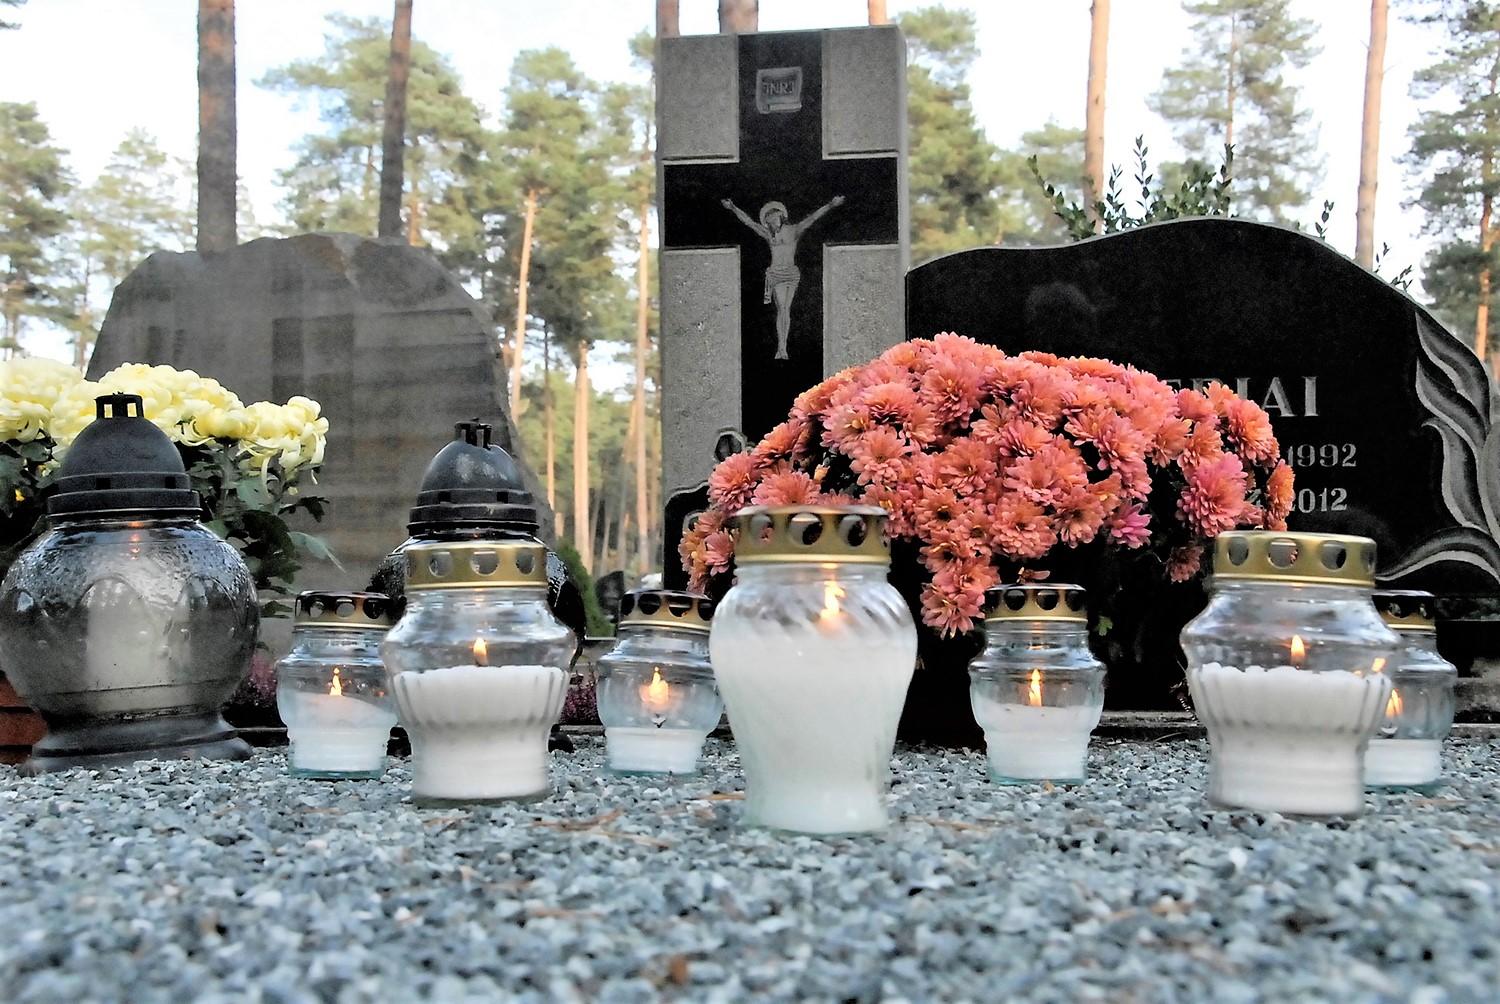 Gėlės sužysta ir ant apleistų kapų / Šiemet artimųjų kapus galima lankyti ilgiau.  Gedimino Nemunaičio nuotr.